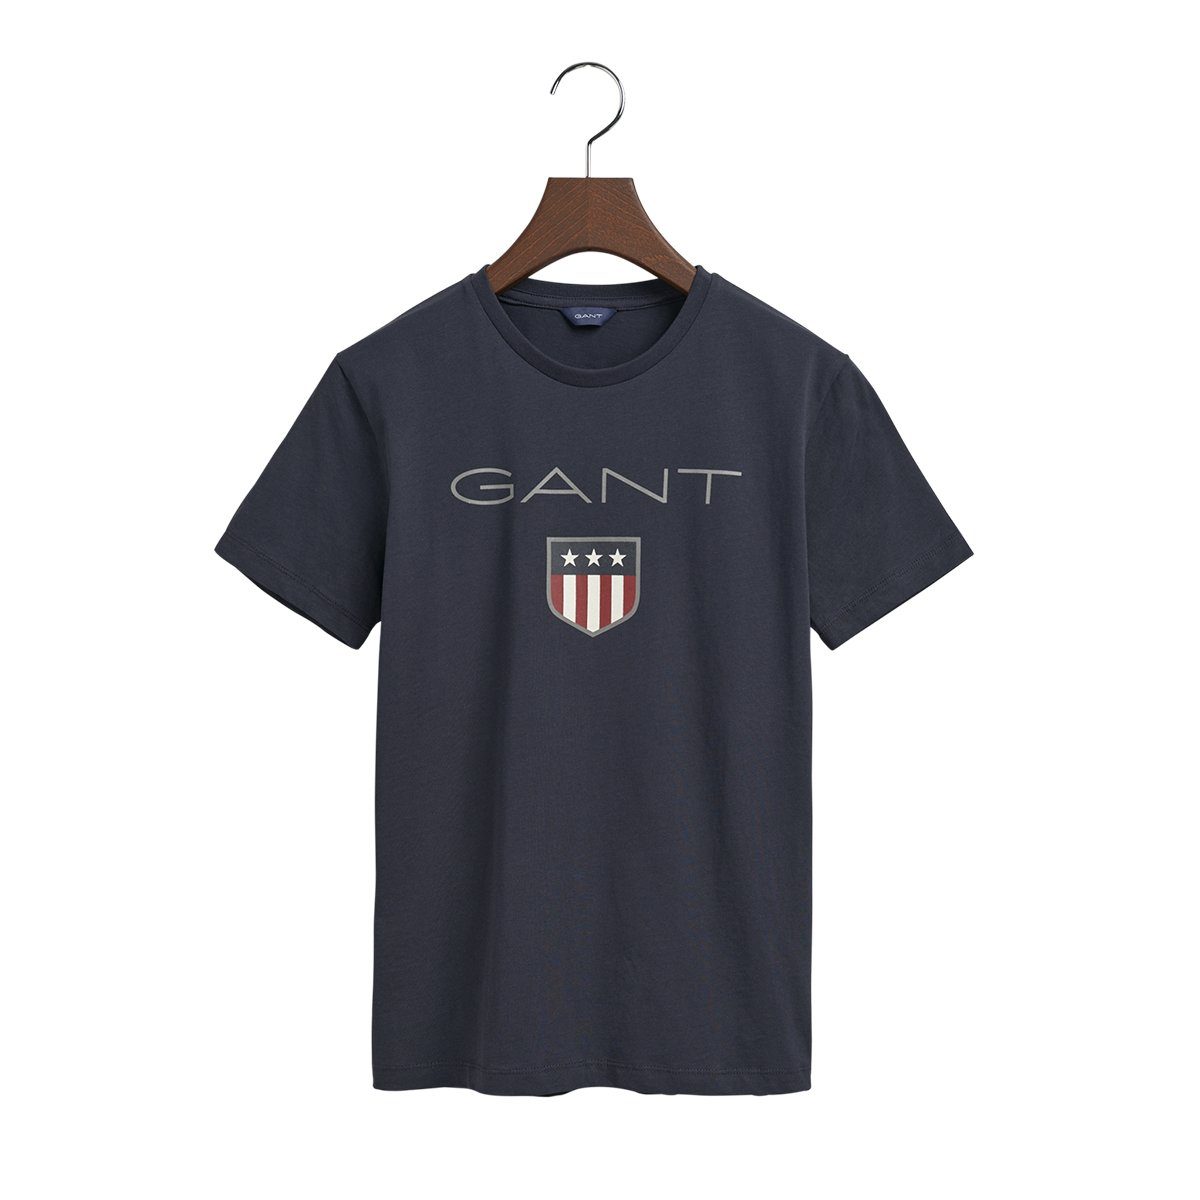 Gant T-Shirt 905114 Kinder Unisex Shirt T-Shirt SHIELD SS Dunkelblau | T-Shirts